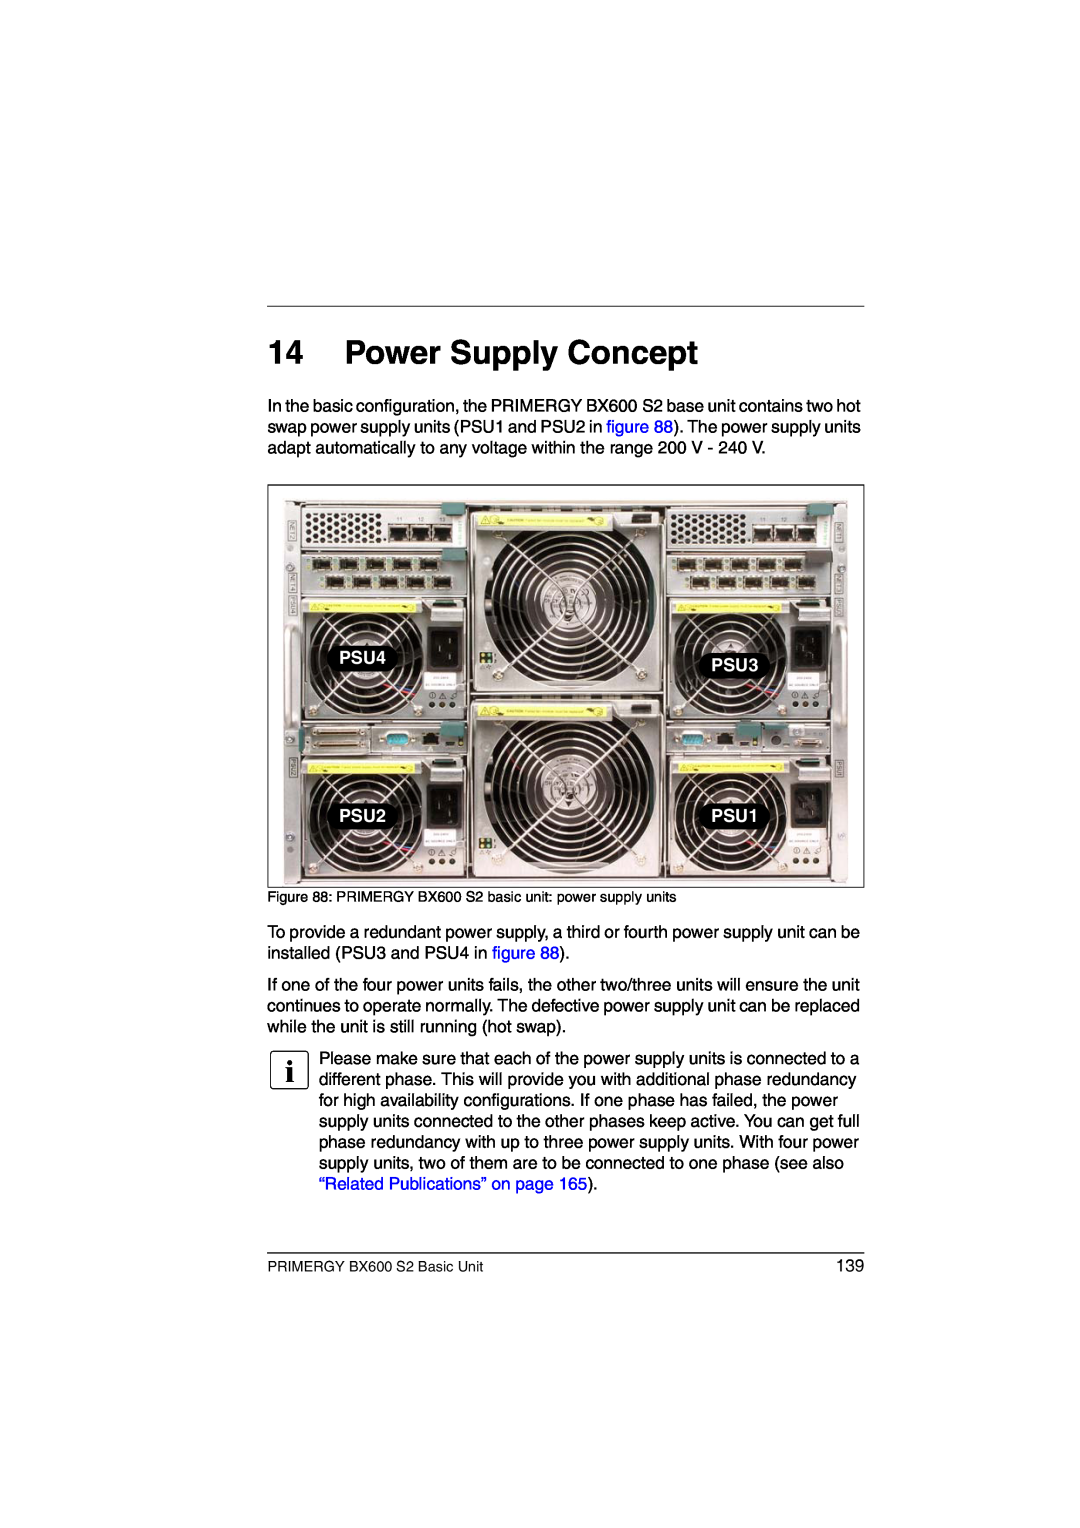 Fujitsu BX600 S2 manual Power Supply Concept, PSU4, PSU3, PSU2, PSU1 